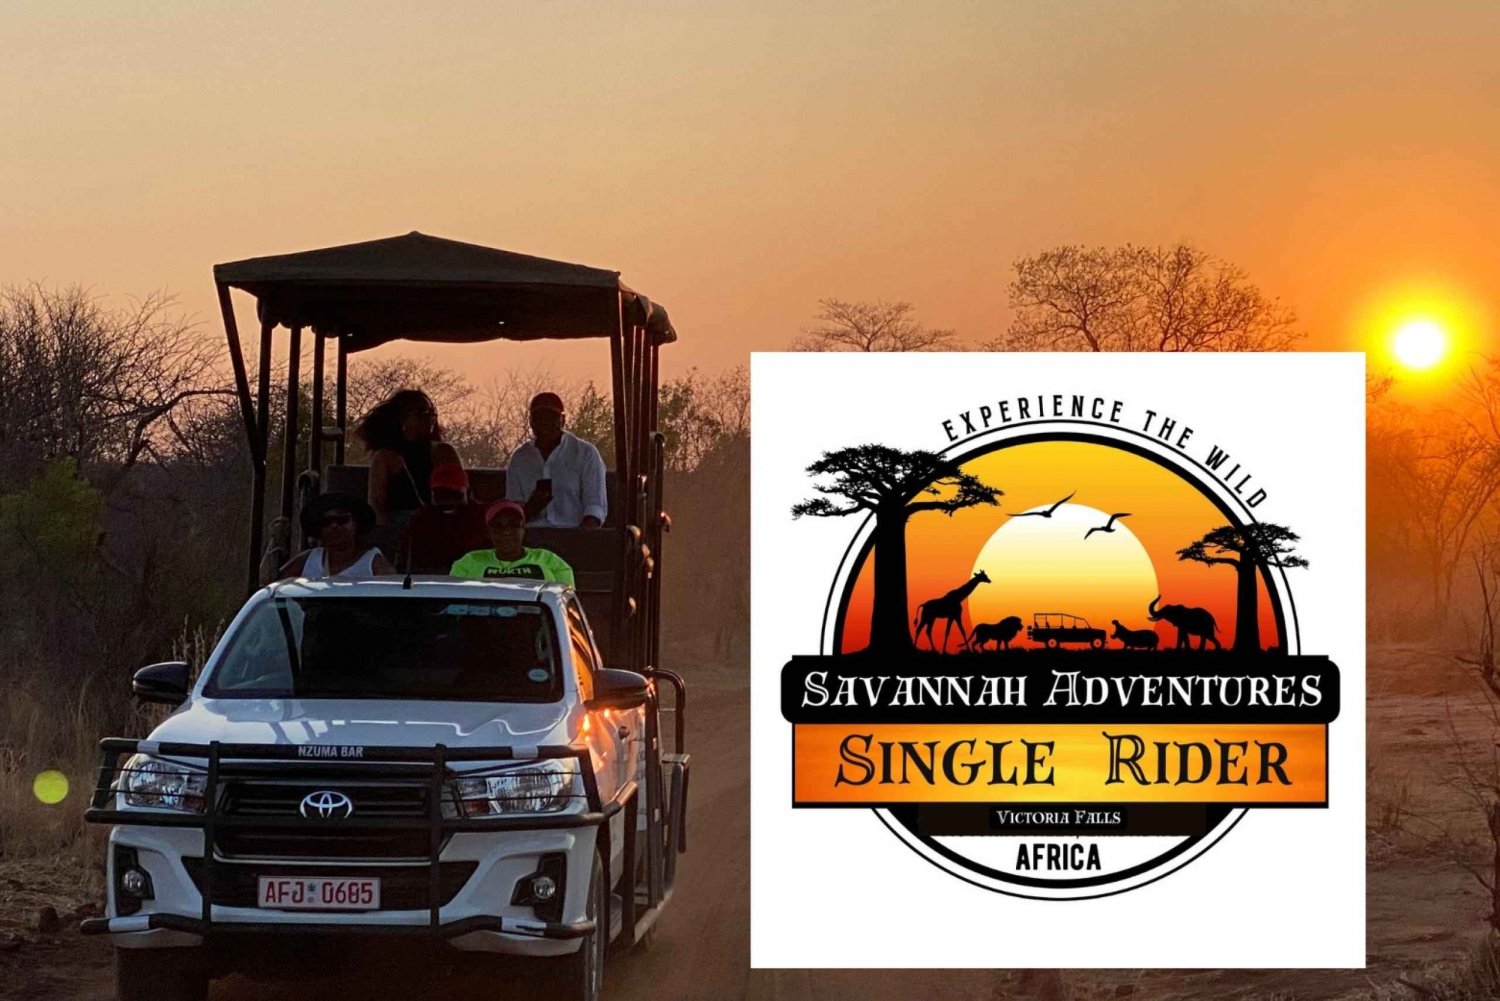 Victoria Falls: Game Drive or Safari for Single Riders